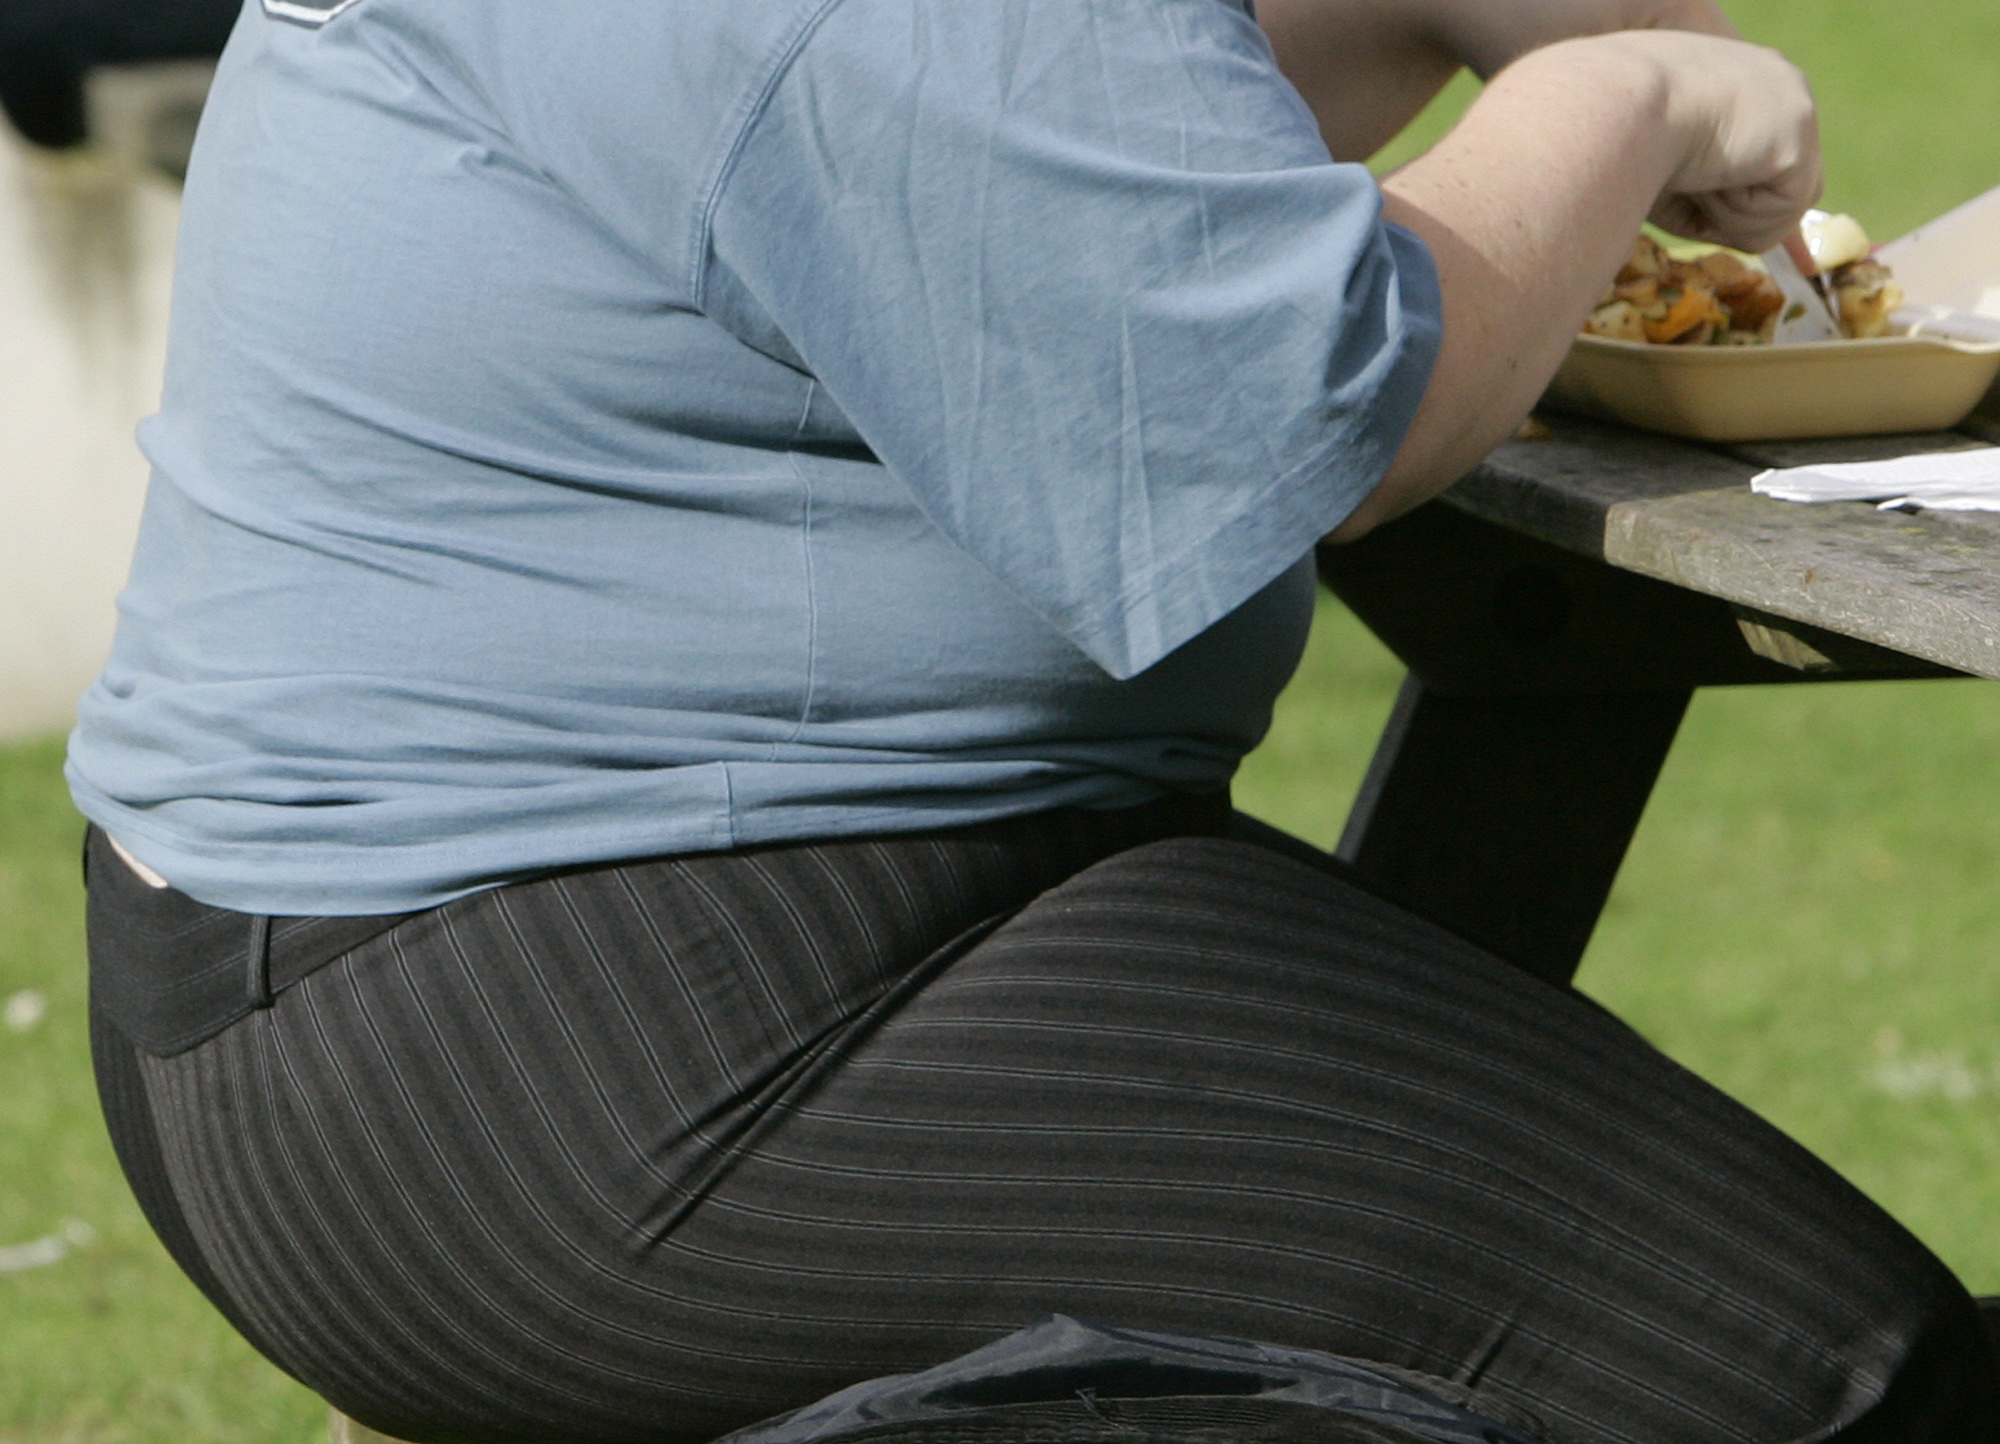 Η παχυσαρκία μειώνει το προσδόκιμο ζωής έως και οκτώ χρόνια